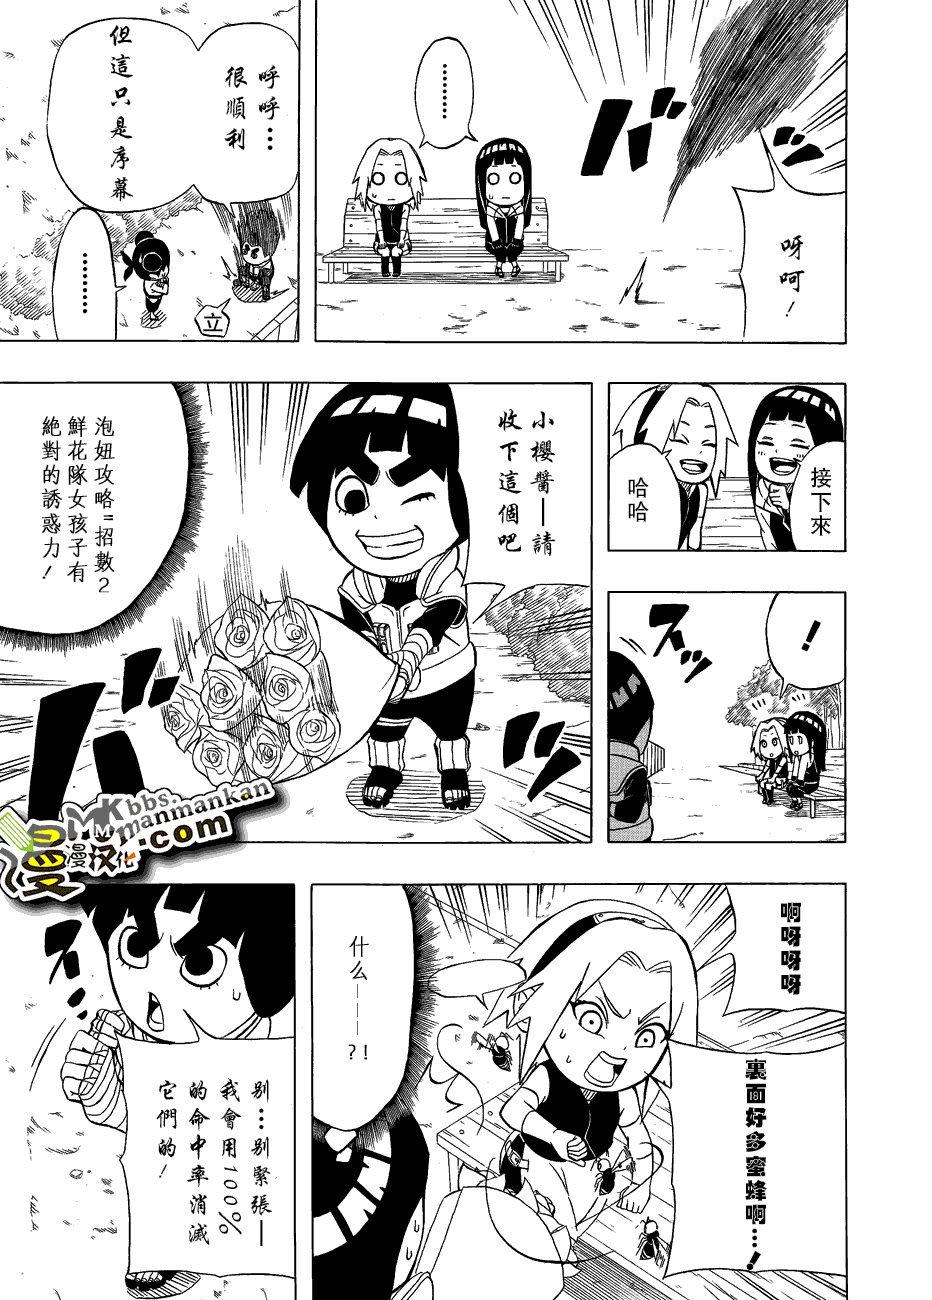 《洛克李之青春活力全开忍传》漫画 短篇01-02